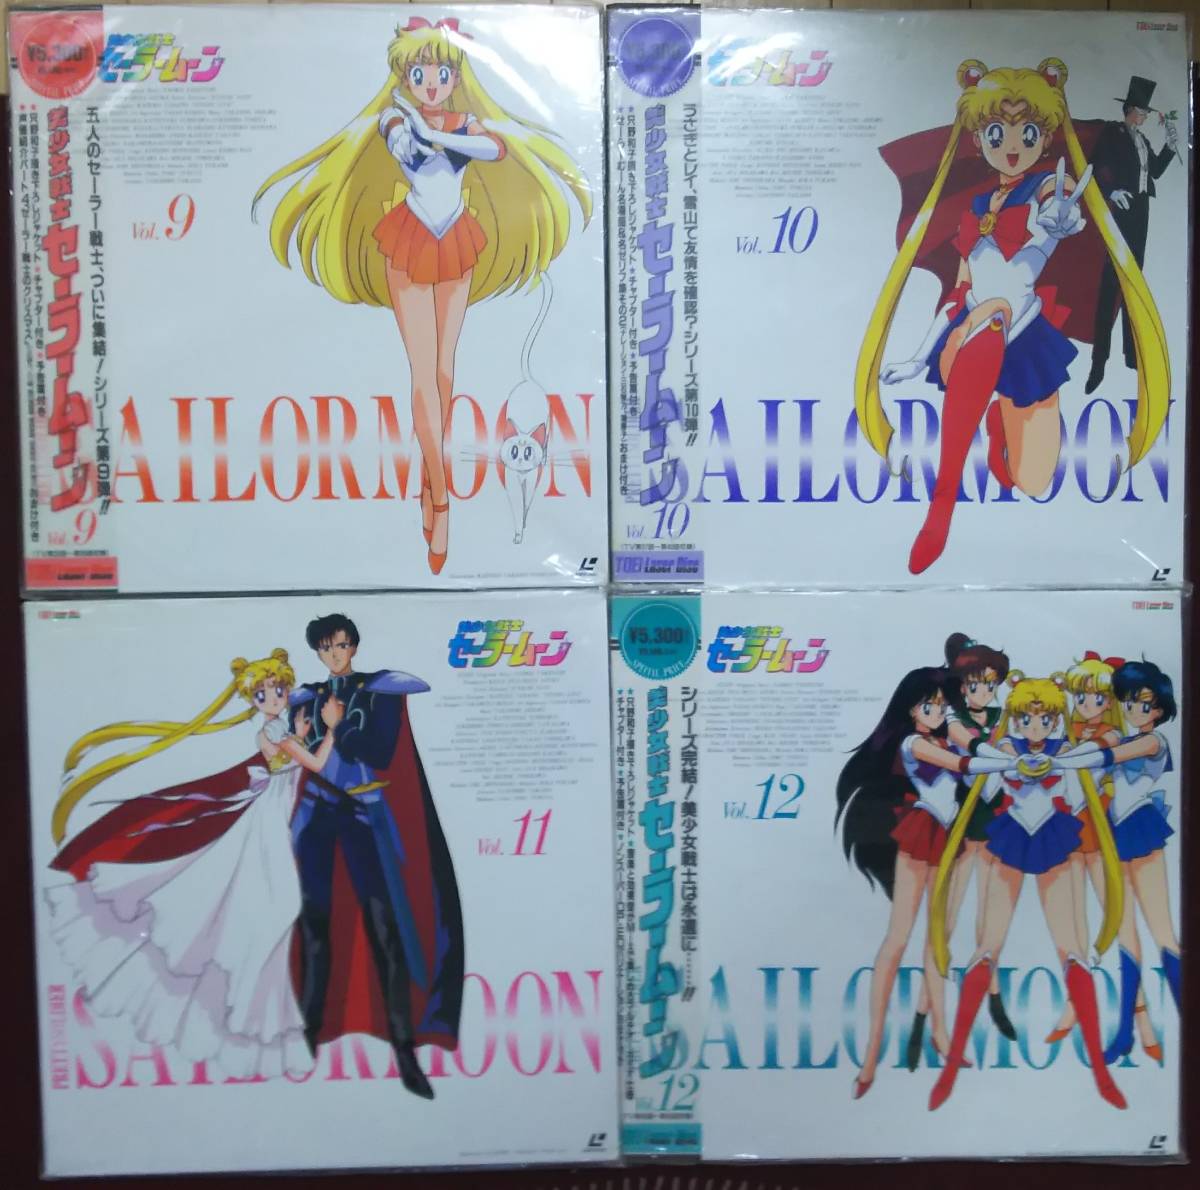  Прекрасная воительница Сейлор Мун лазерный диск LD все 12 шт все тома в комплекте Takeuchi прямой .